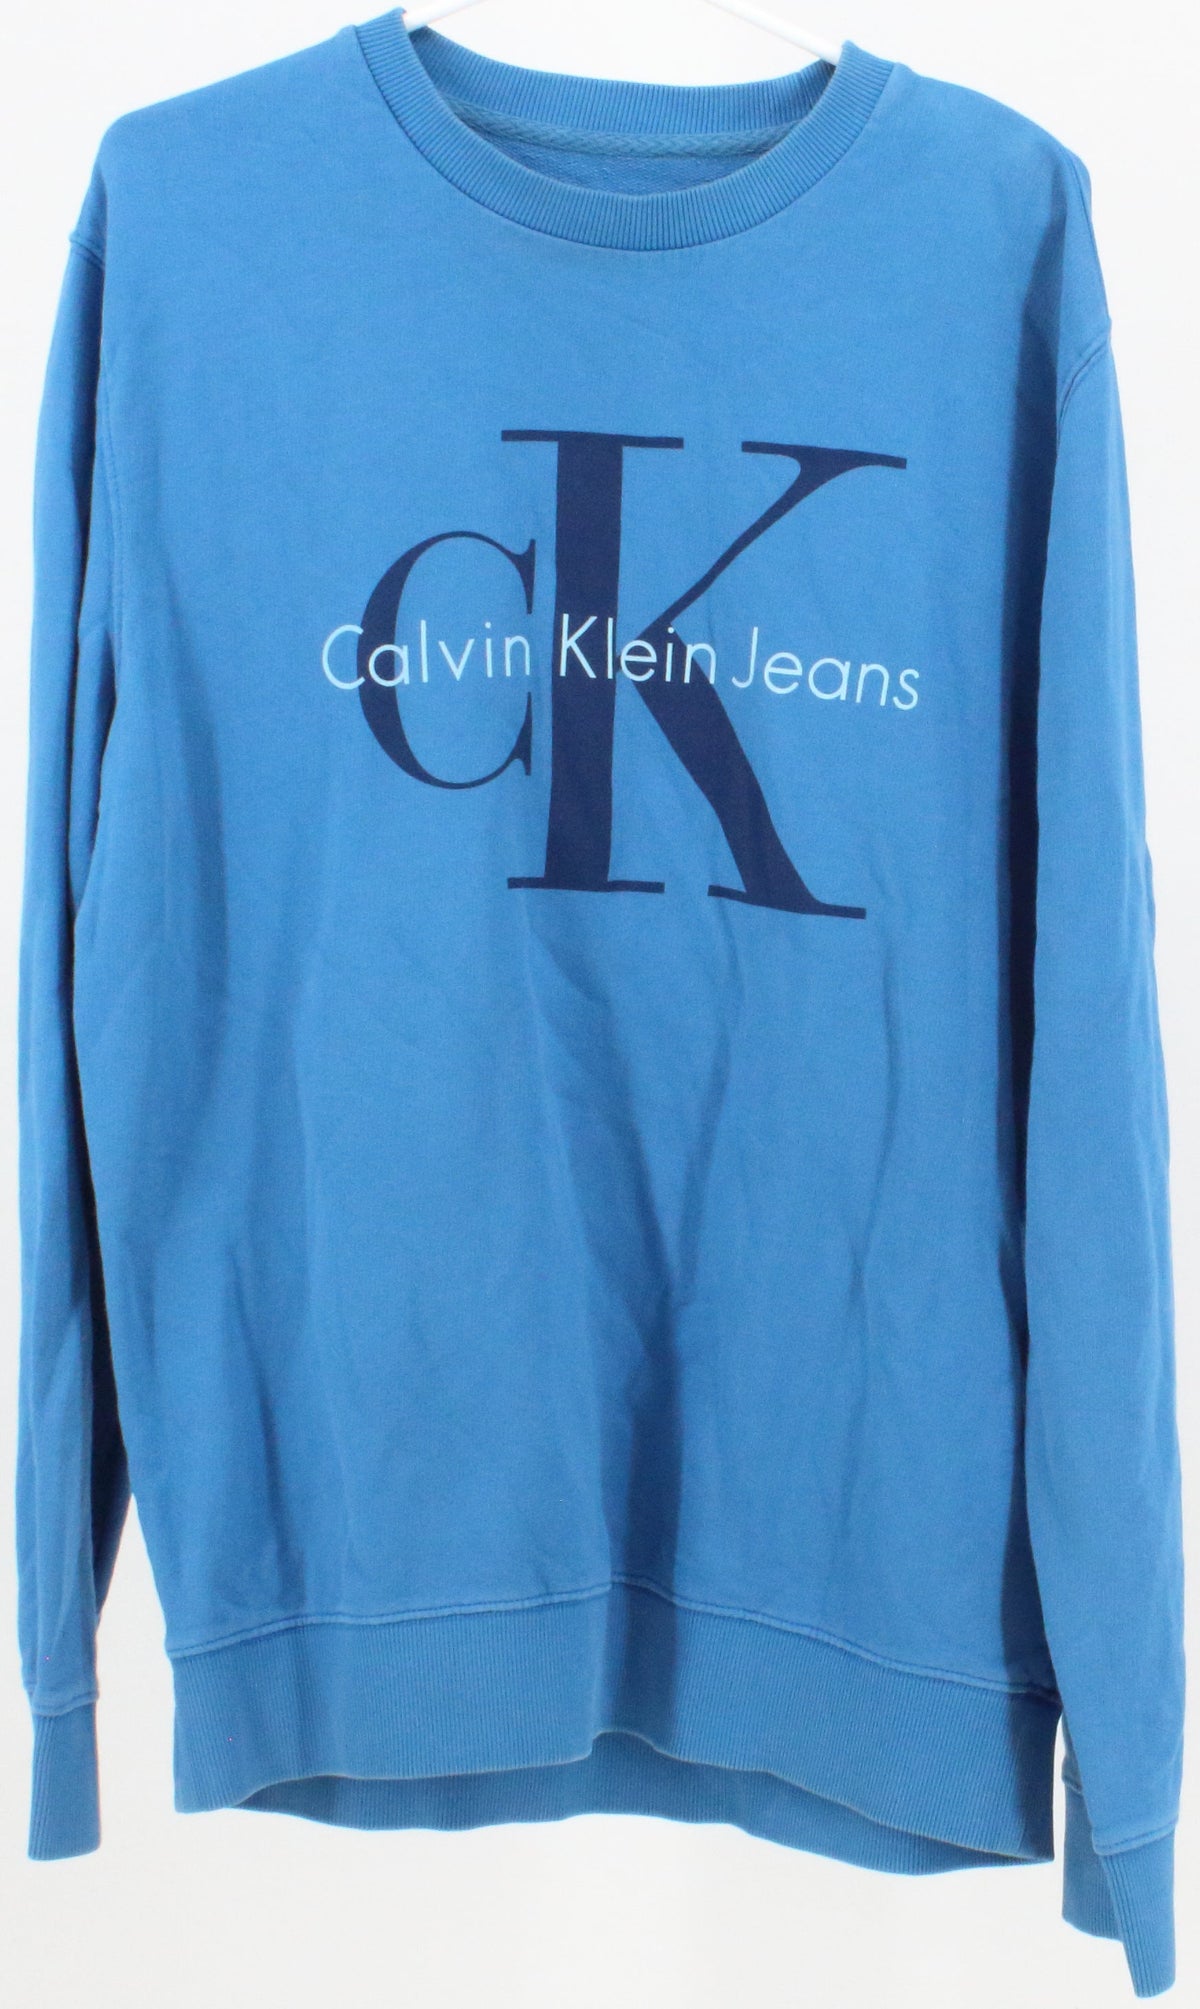 Calvin Klein Jeans Blue Sweatshirt